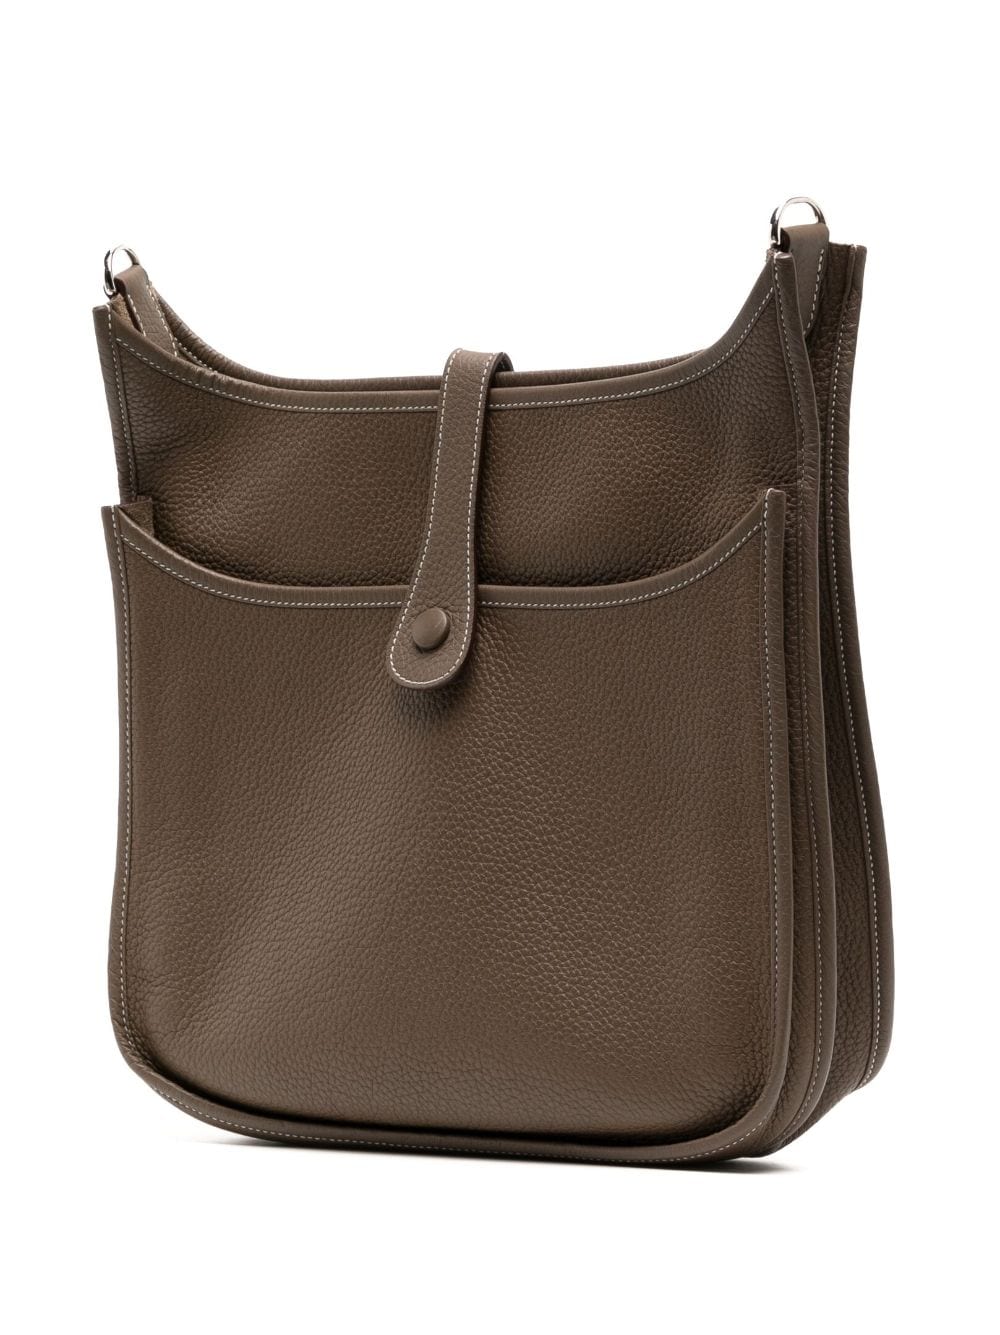 Hermès 2012 Pre-owned Evelyne 3 PM Shoulder Bag